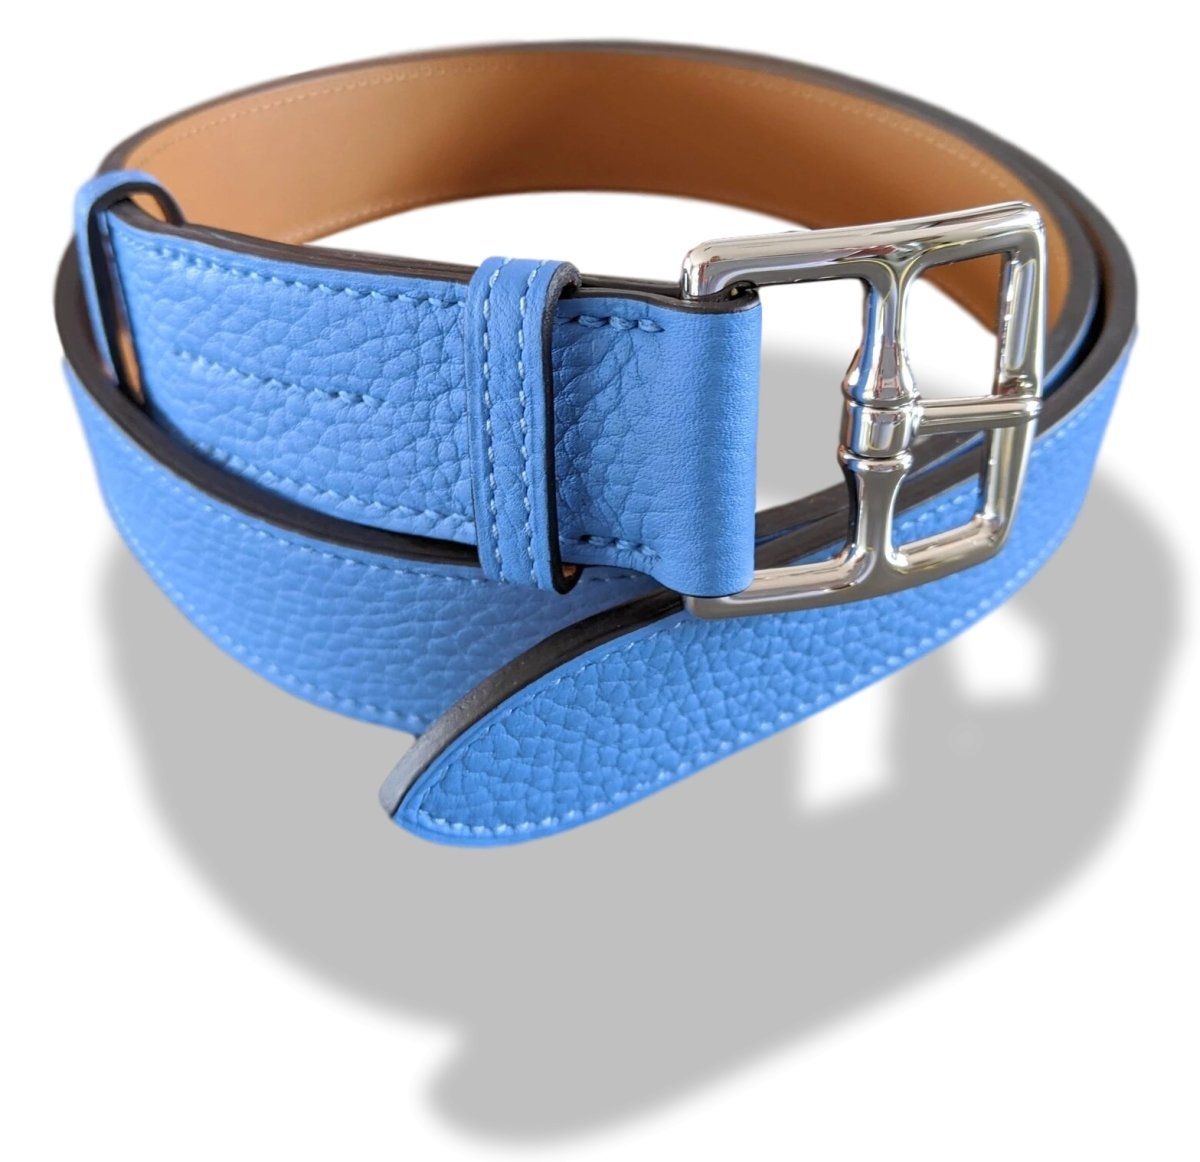 Hermes Unisex Bleu Paradis Taurillon Clemence Etriviere 32 Complete Belt